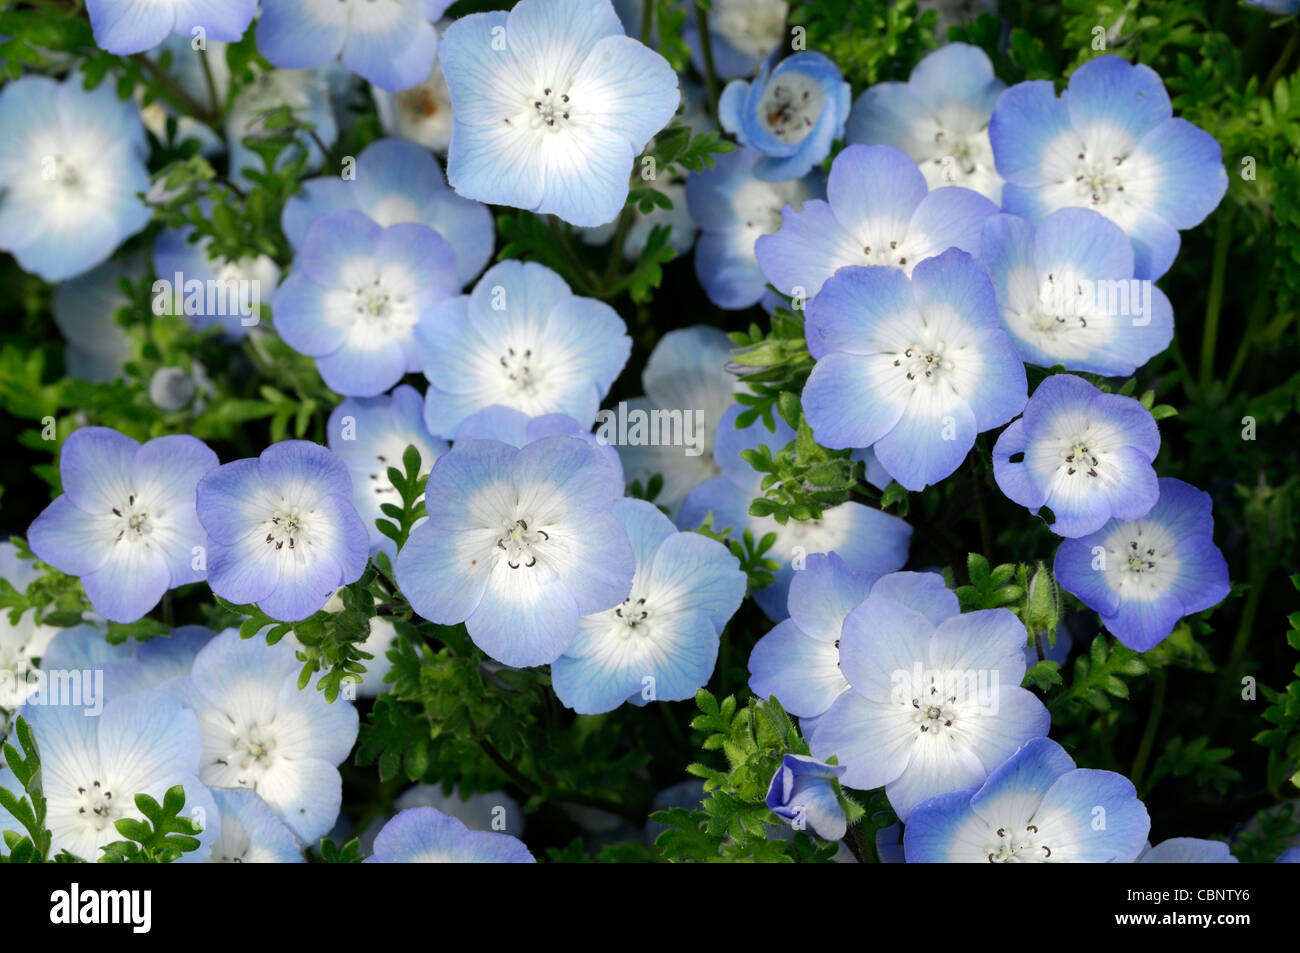 Nemophila Menziesii babyblau Augen Pflanzen halb winterhart jährlich im  Sommer blaue und weiße Blumen Blüte Blüten Stockfotografie - Alamy